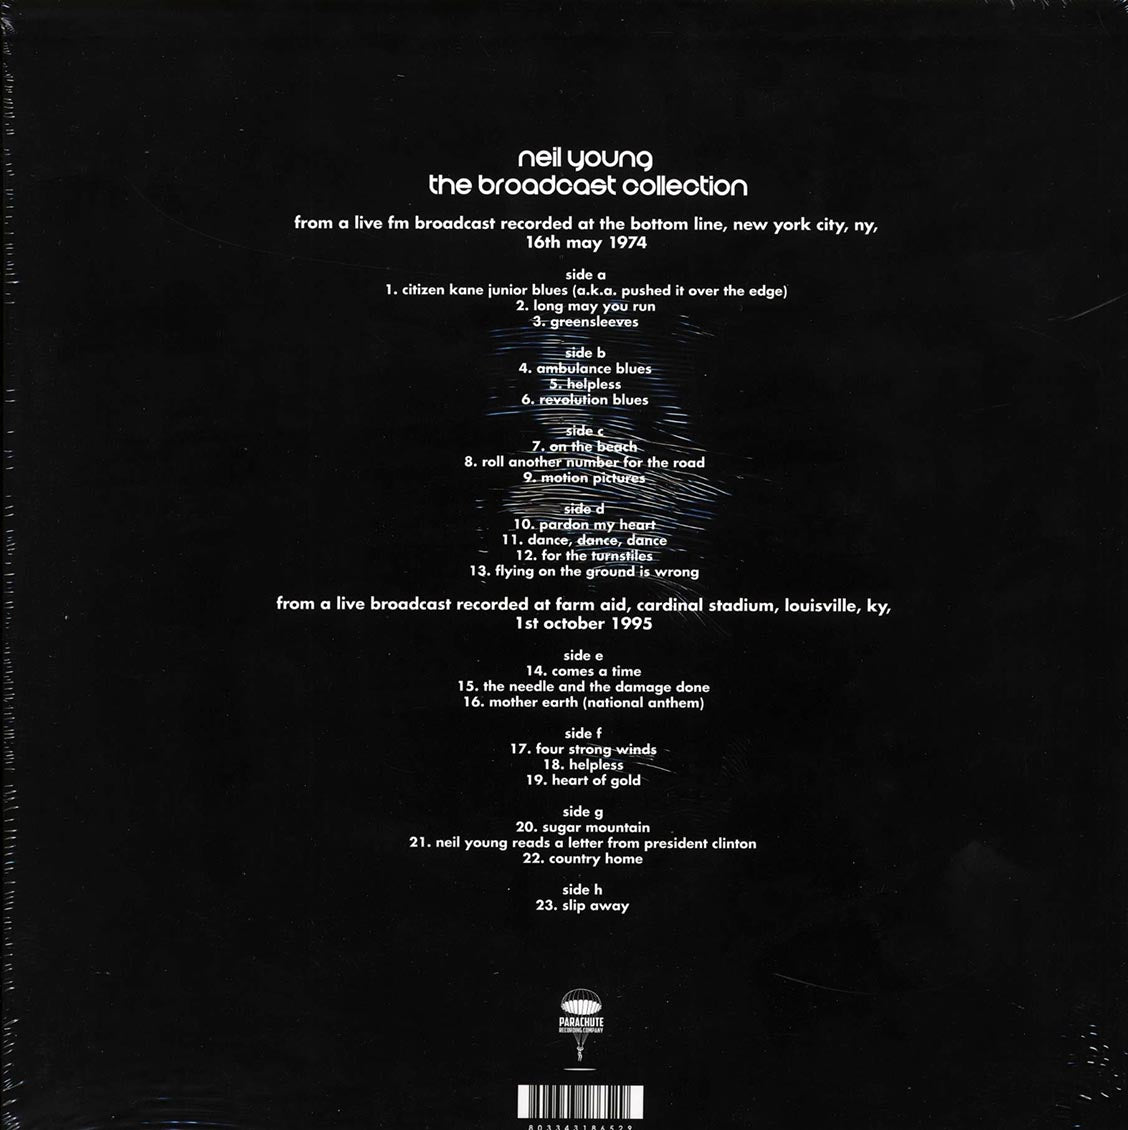 Neil Young - The Broadcast Collection (casebound set) (ltd. ed.) (4xLP) (box set) - Vinyl LP, LP